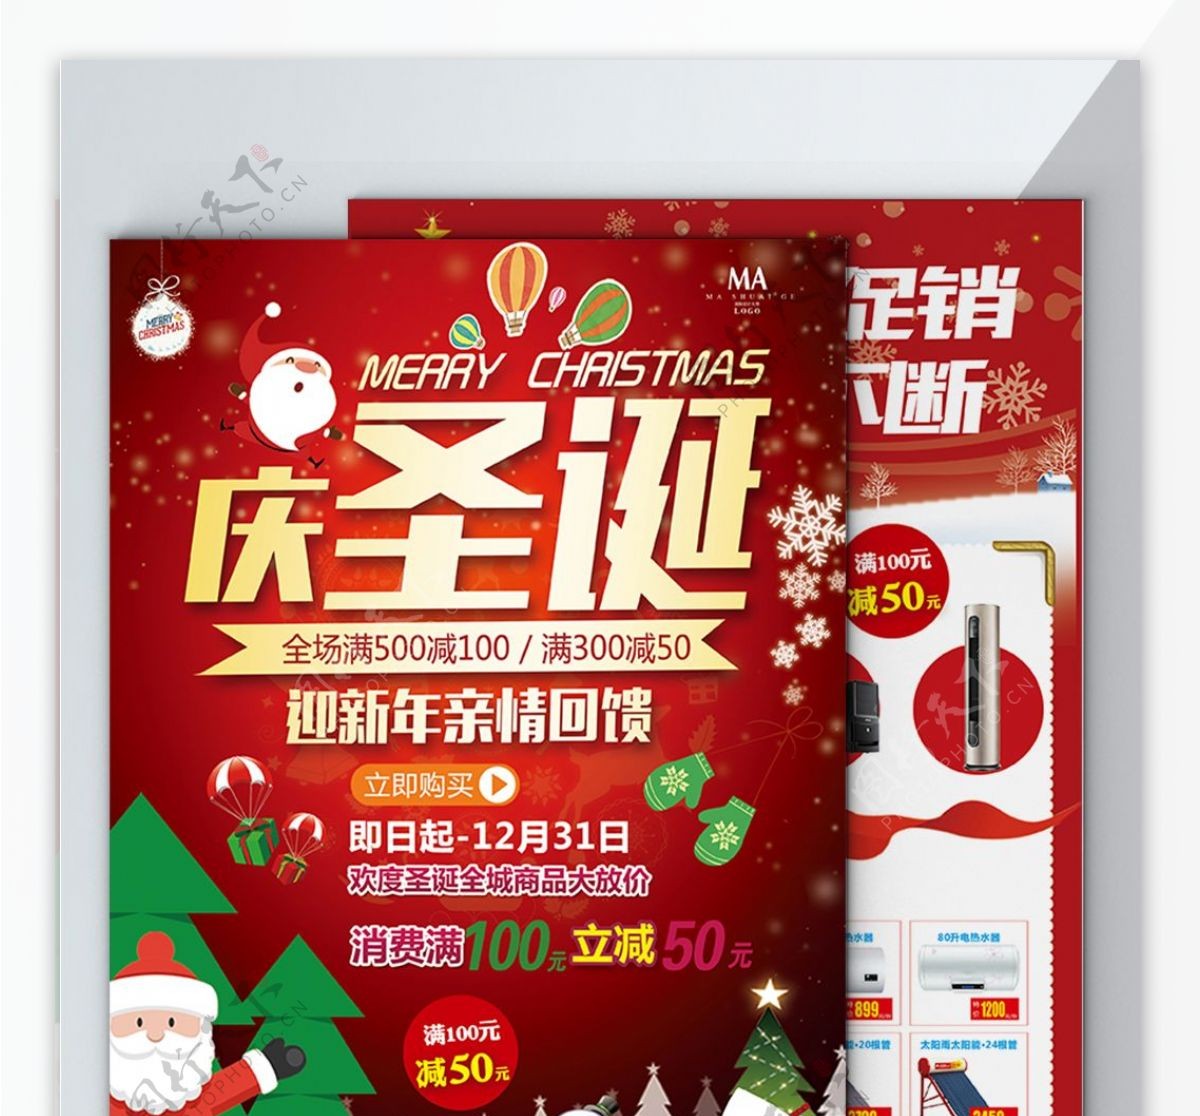 高端大气红色圣诞电器促销宣传单